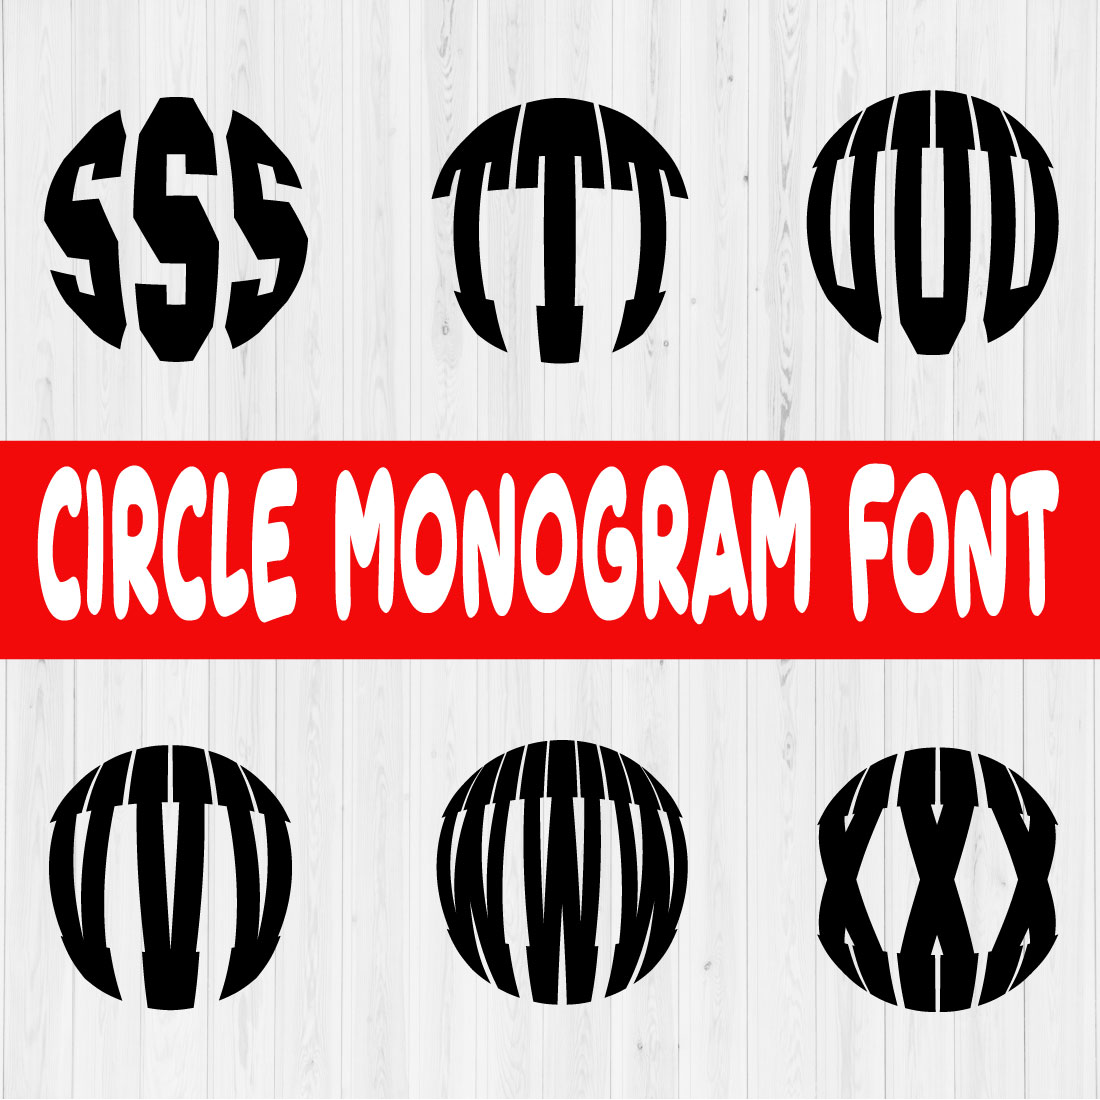 Circle Monogram Font Vol4 preview image.